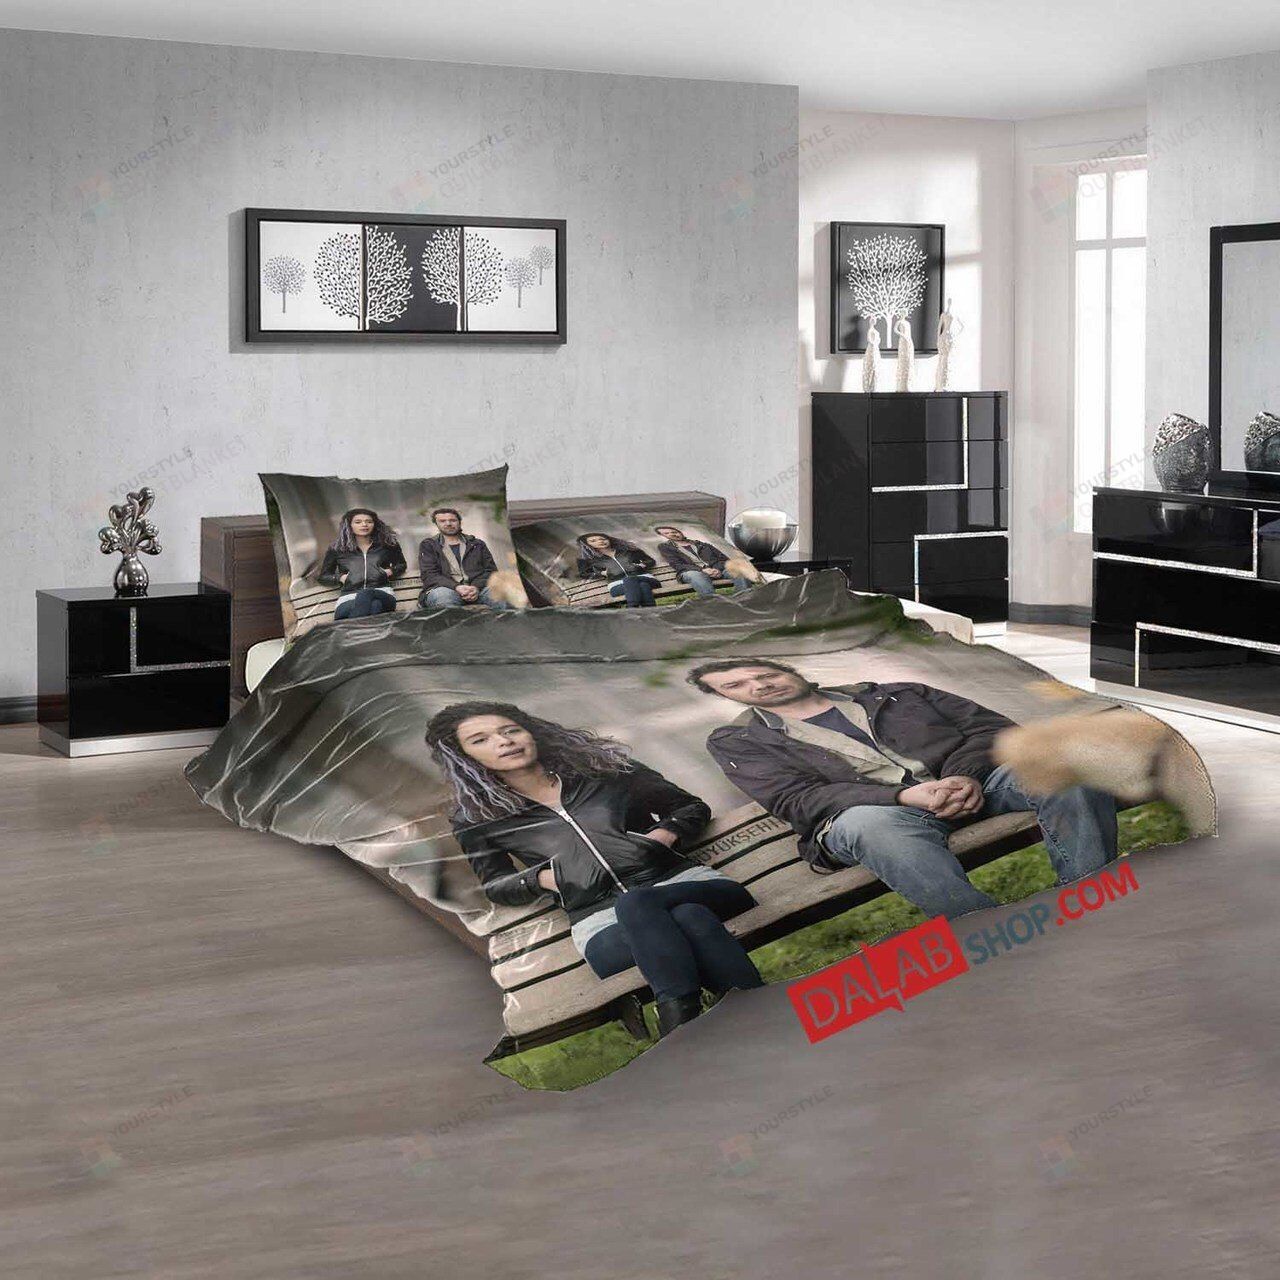 Movie Incir Receli 2 V 3d Customized Duvet Cover Bedroom Sets Bedding Sets